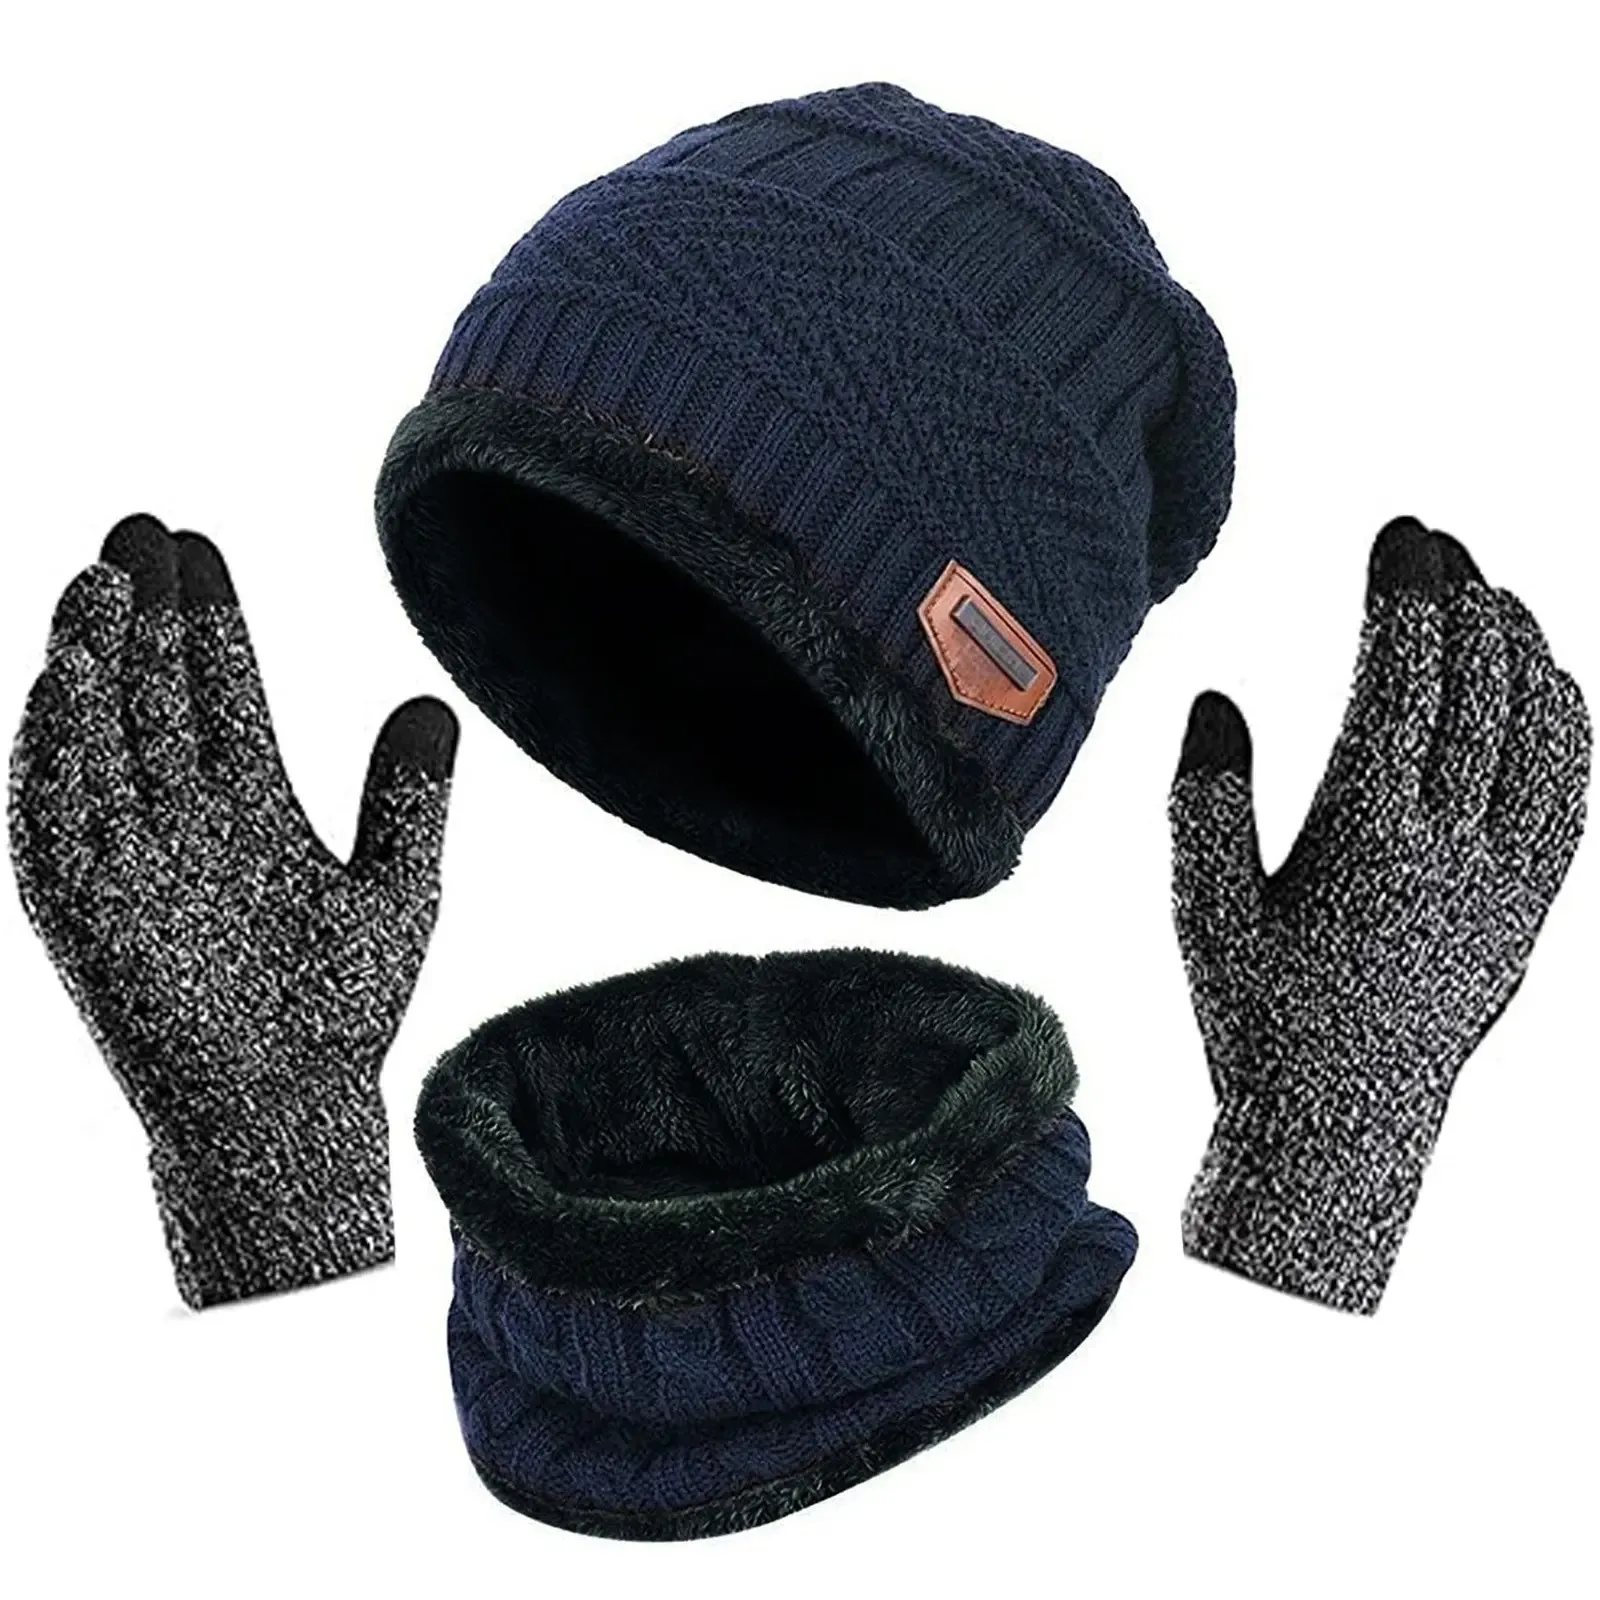 Frauen Dick Warm Beanie Schal Mütze und Handschuh Sets 3 teile/satz Gestrickte Männer Winter Hüte Mit Schal Touchscreen Handschuhe Set